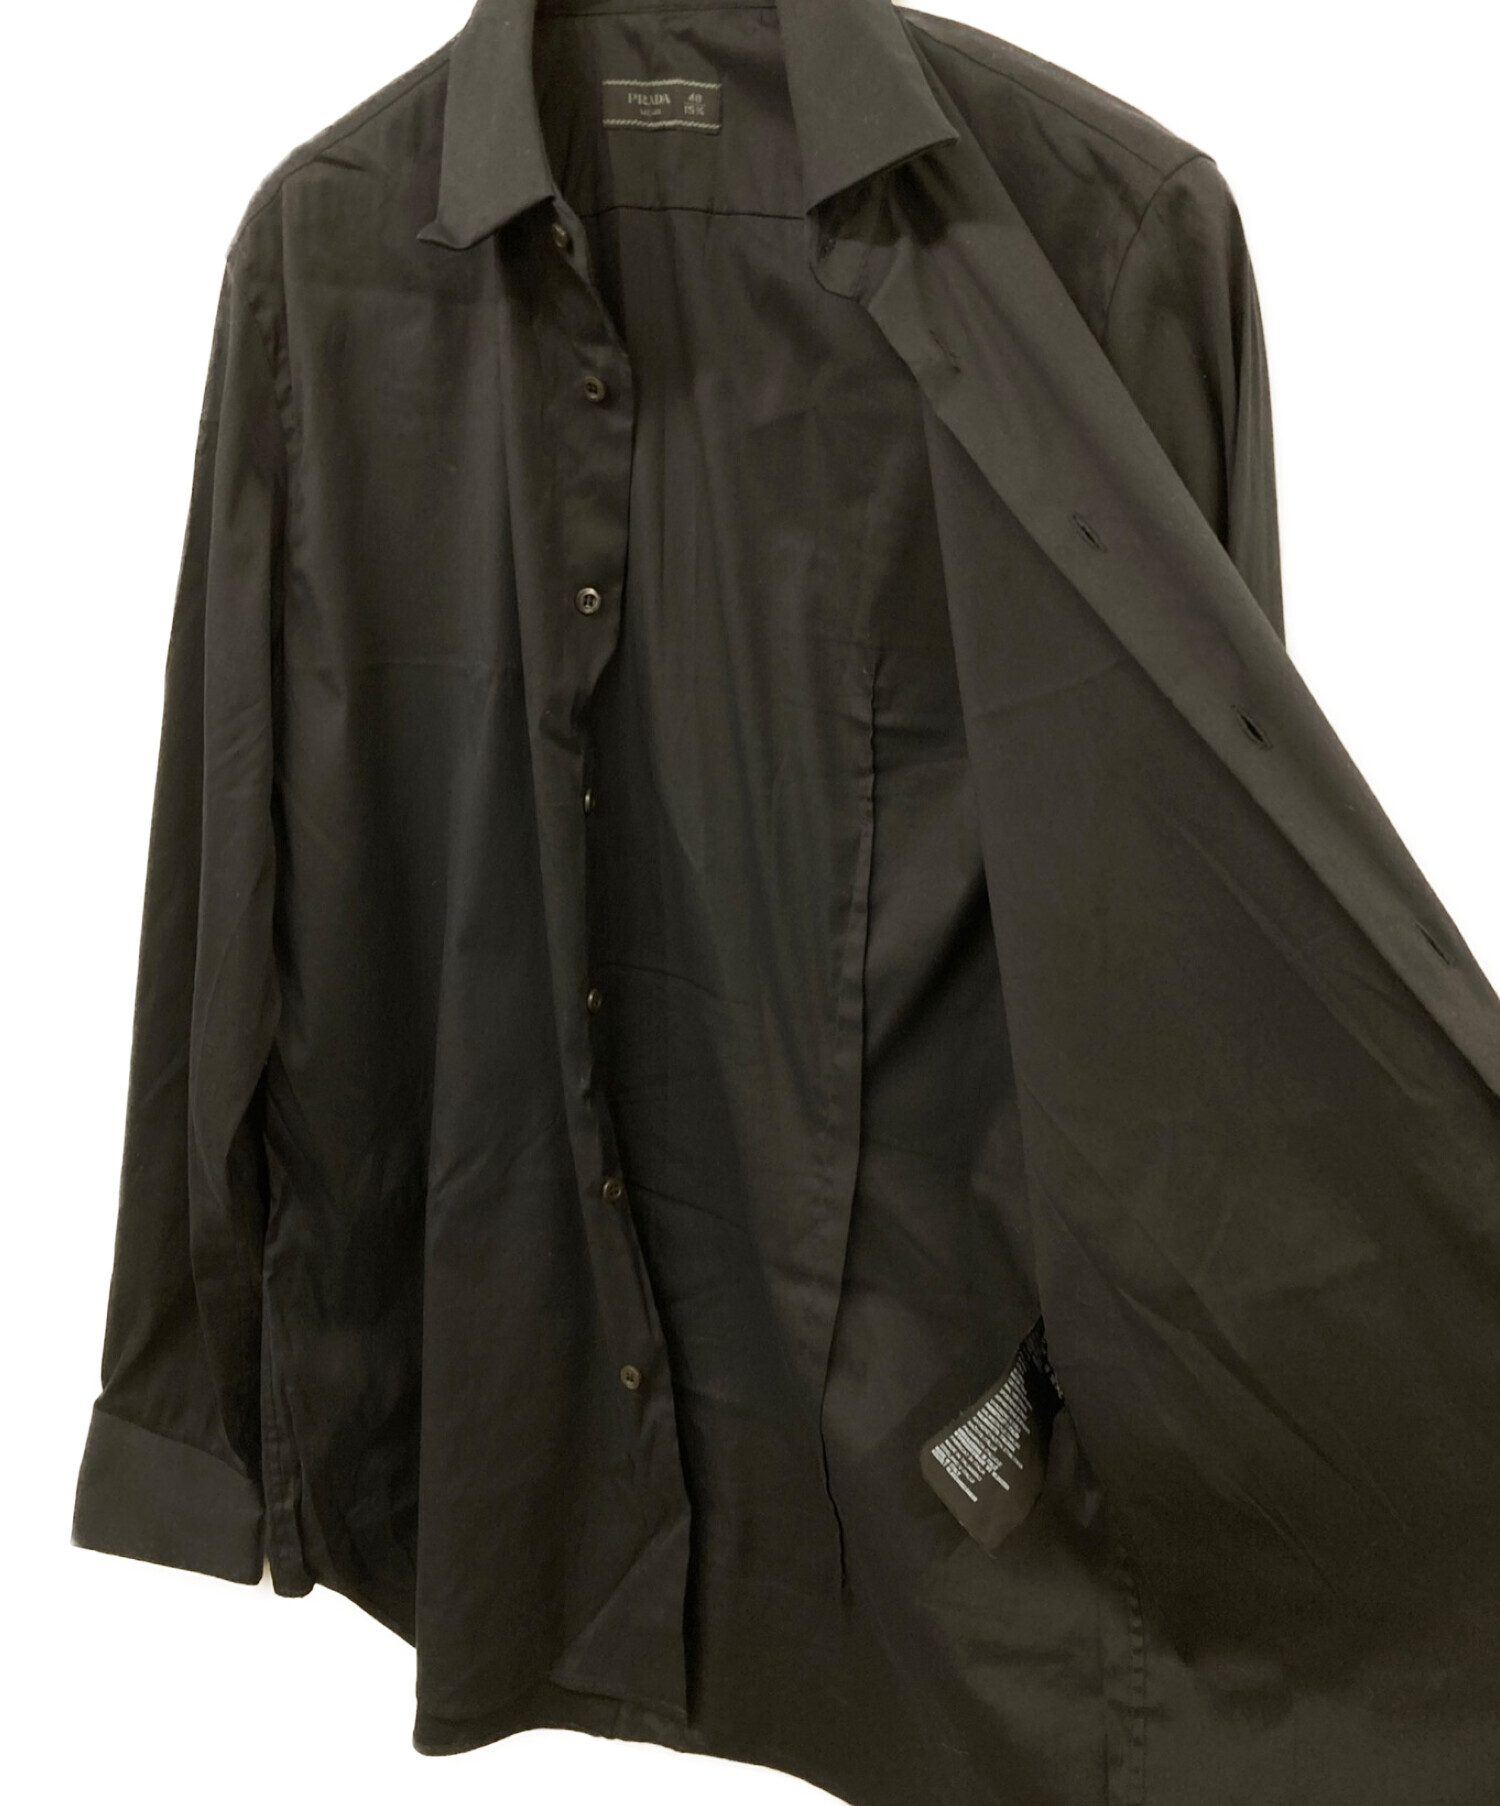 PRADA (プラダ) ストレッチシャツ ブラック サイズ:40